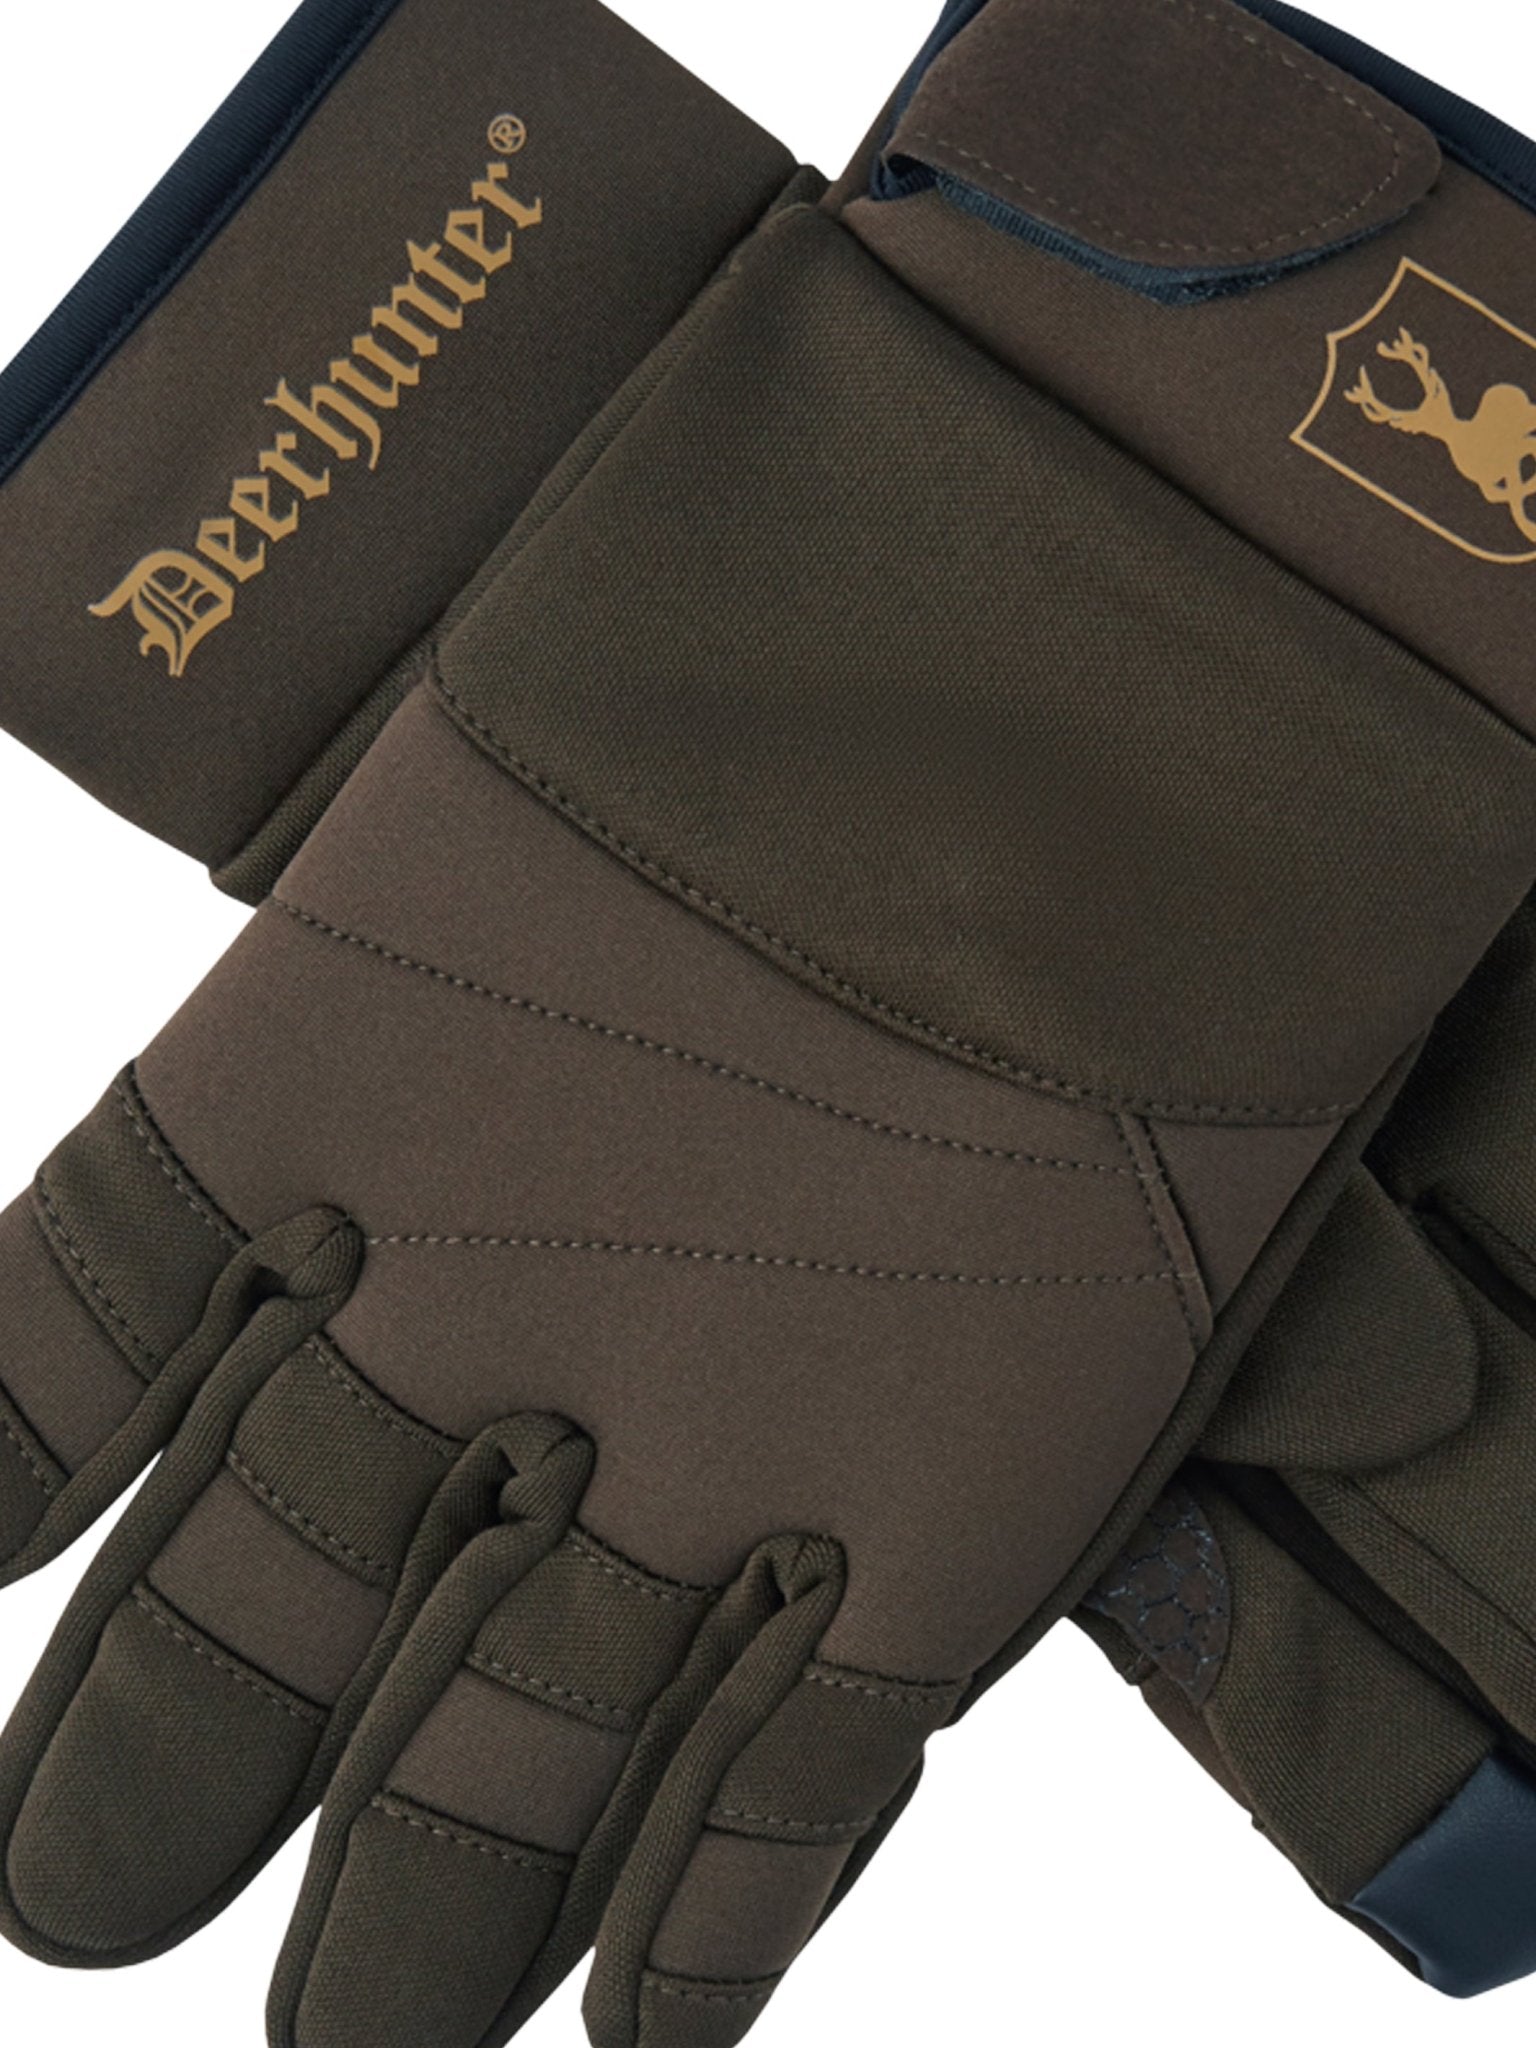 4elementsclothingDeerhunterDeerhunter - Discover Gloves / Hunting / outdoor / shooting glovesGloves8646-385-M